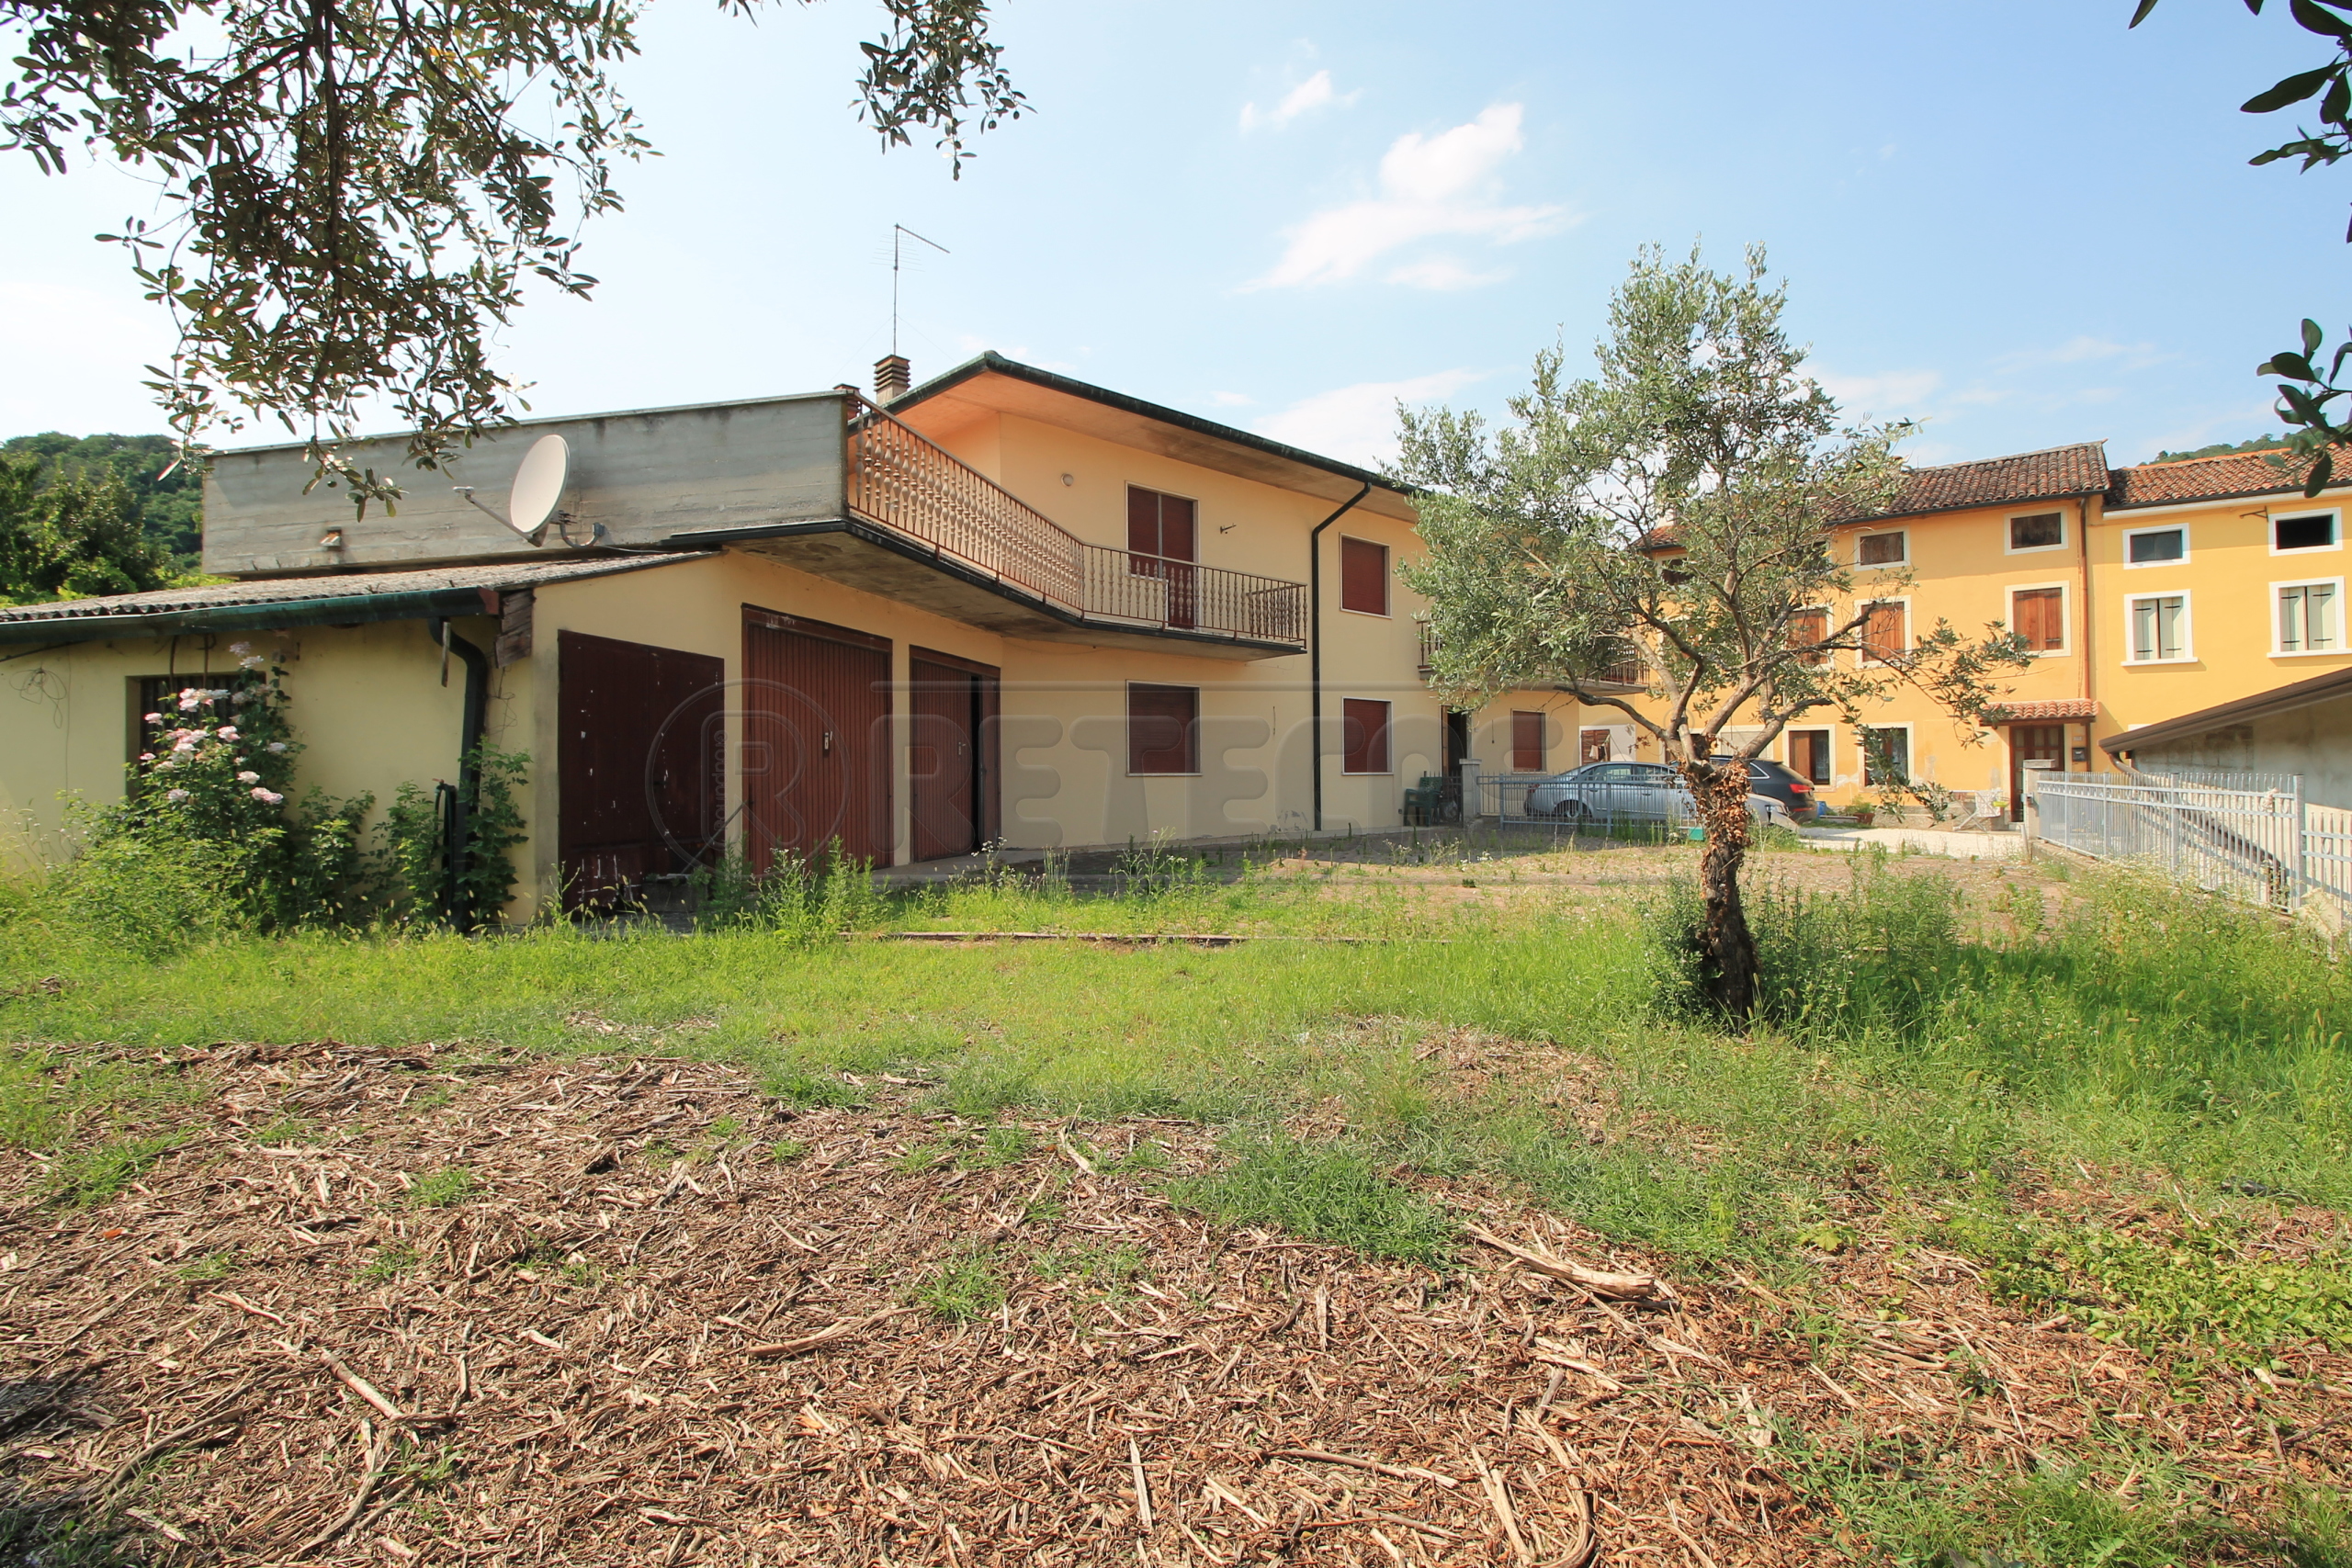 Casa indipendente con terrazzi in contrada selva 95, Montebello Vicentino